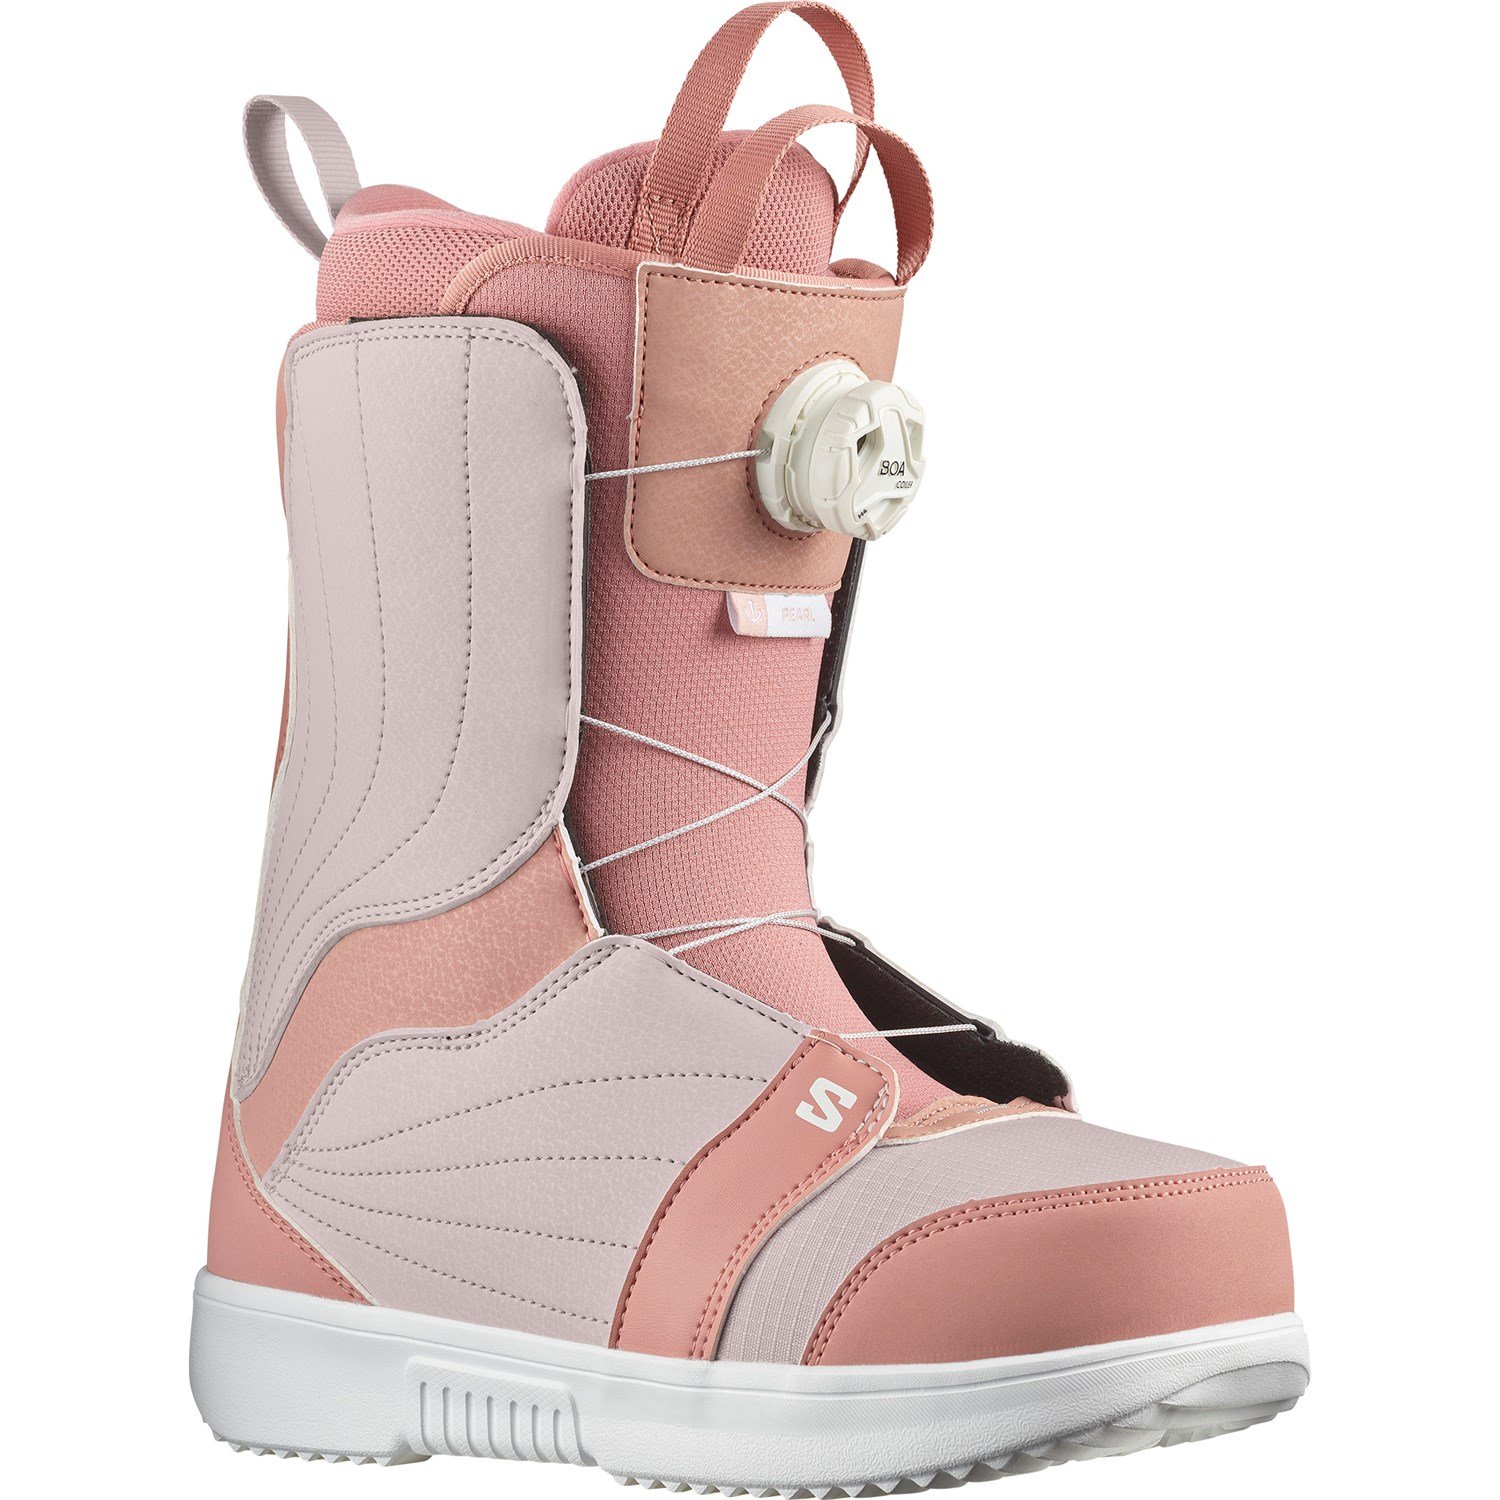 Salomon Pearl Boa Snowboard Boots - Women's evo